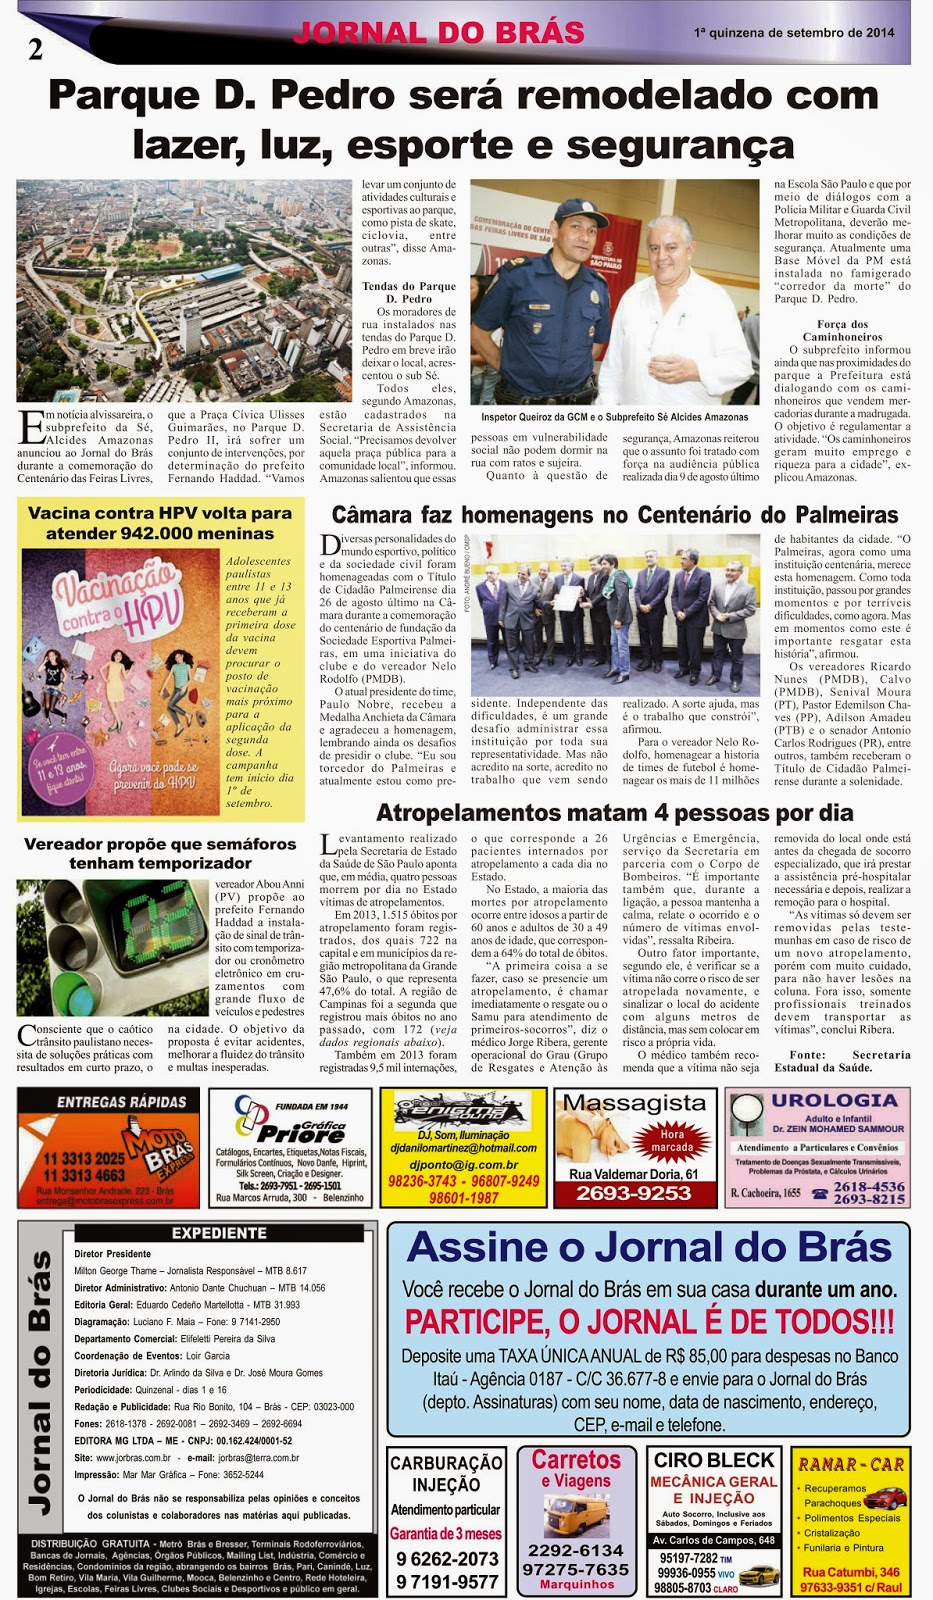 Destaques da Ed. 256 - Jornal do Brás